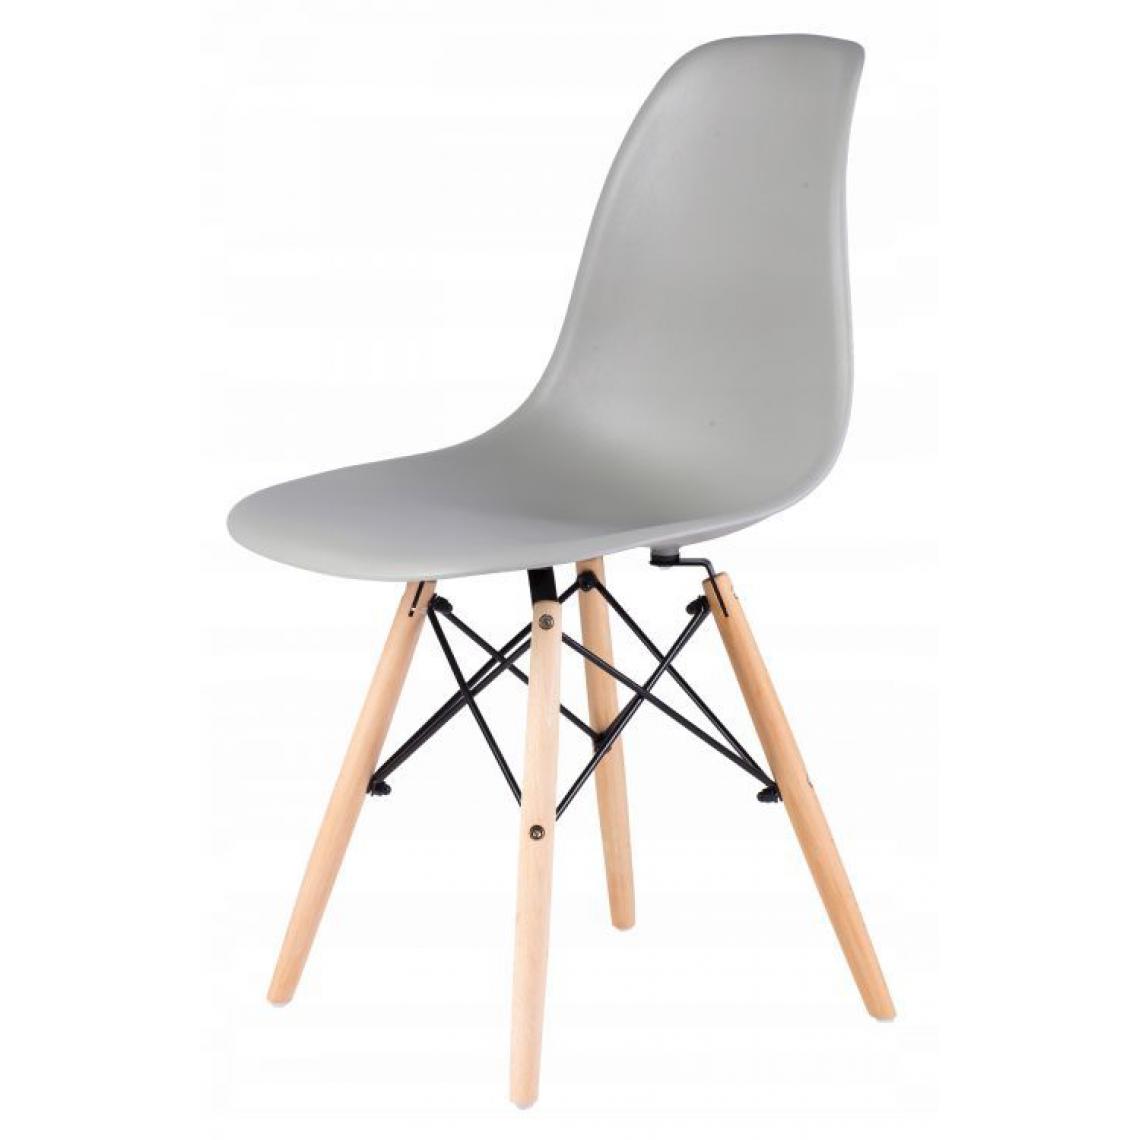 Hucoco - MSTORE - Lot de 4 chaises style moderne salon/chambre - 83x38.5x38.5 - Pieds en bois - Gris - Chaises